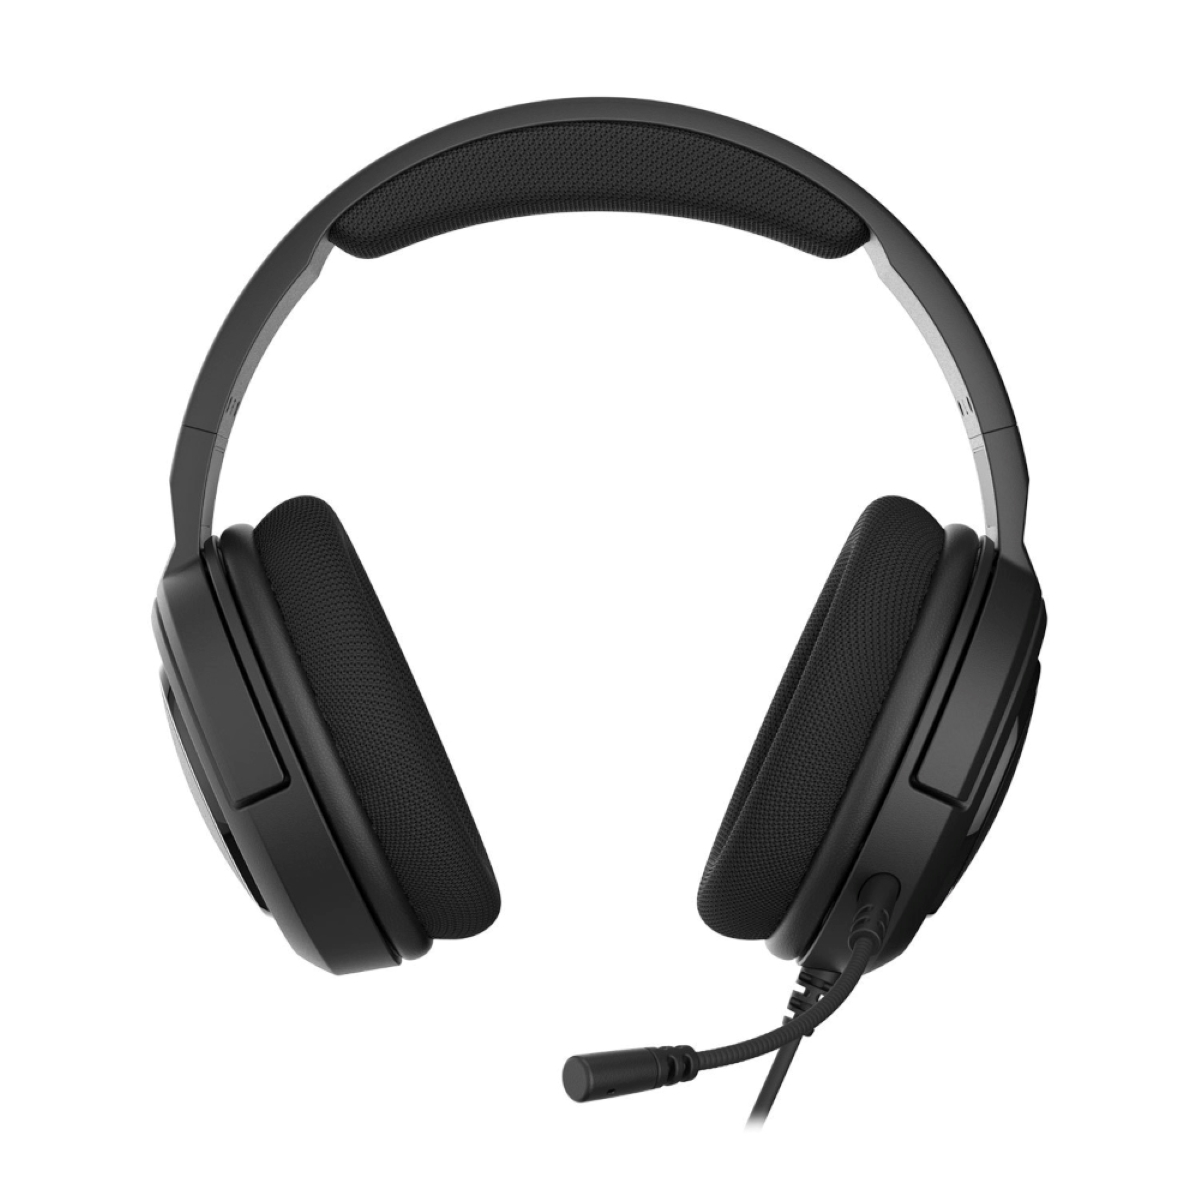 Headset Kohlenstoff HS35 Over-ear Stereo, CORSAIR